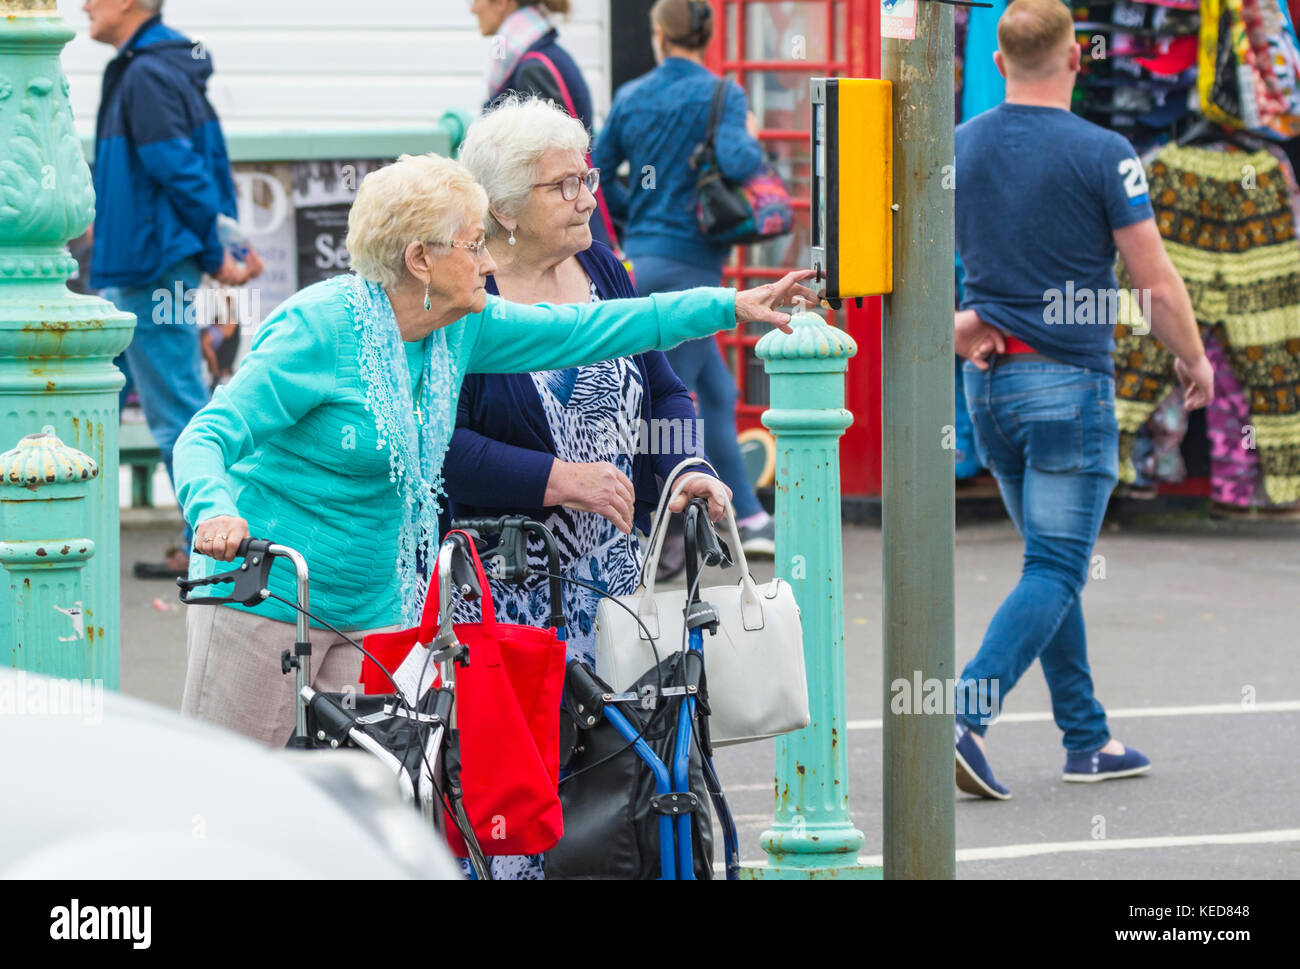 Ältere Frau durch Drücken der Taste auf ein Pelikan Überqueren der Straße in Brighton, East Sussex, England, UK zu überqueren. Stockfoto